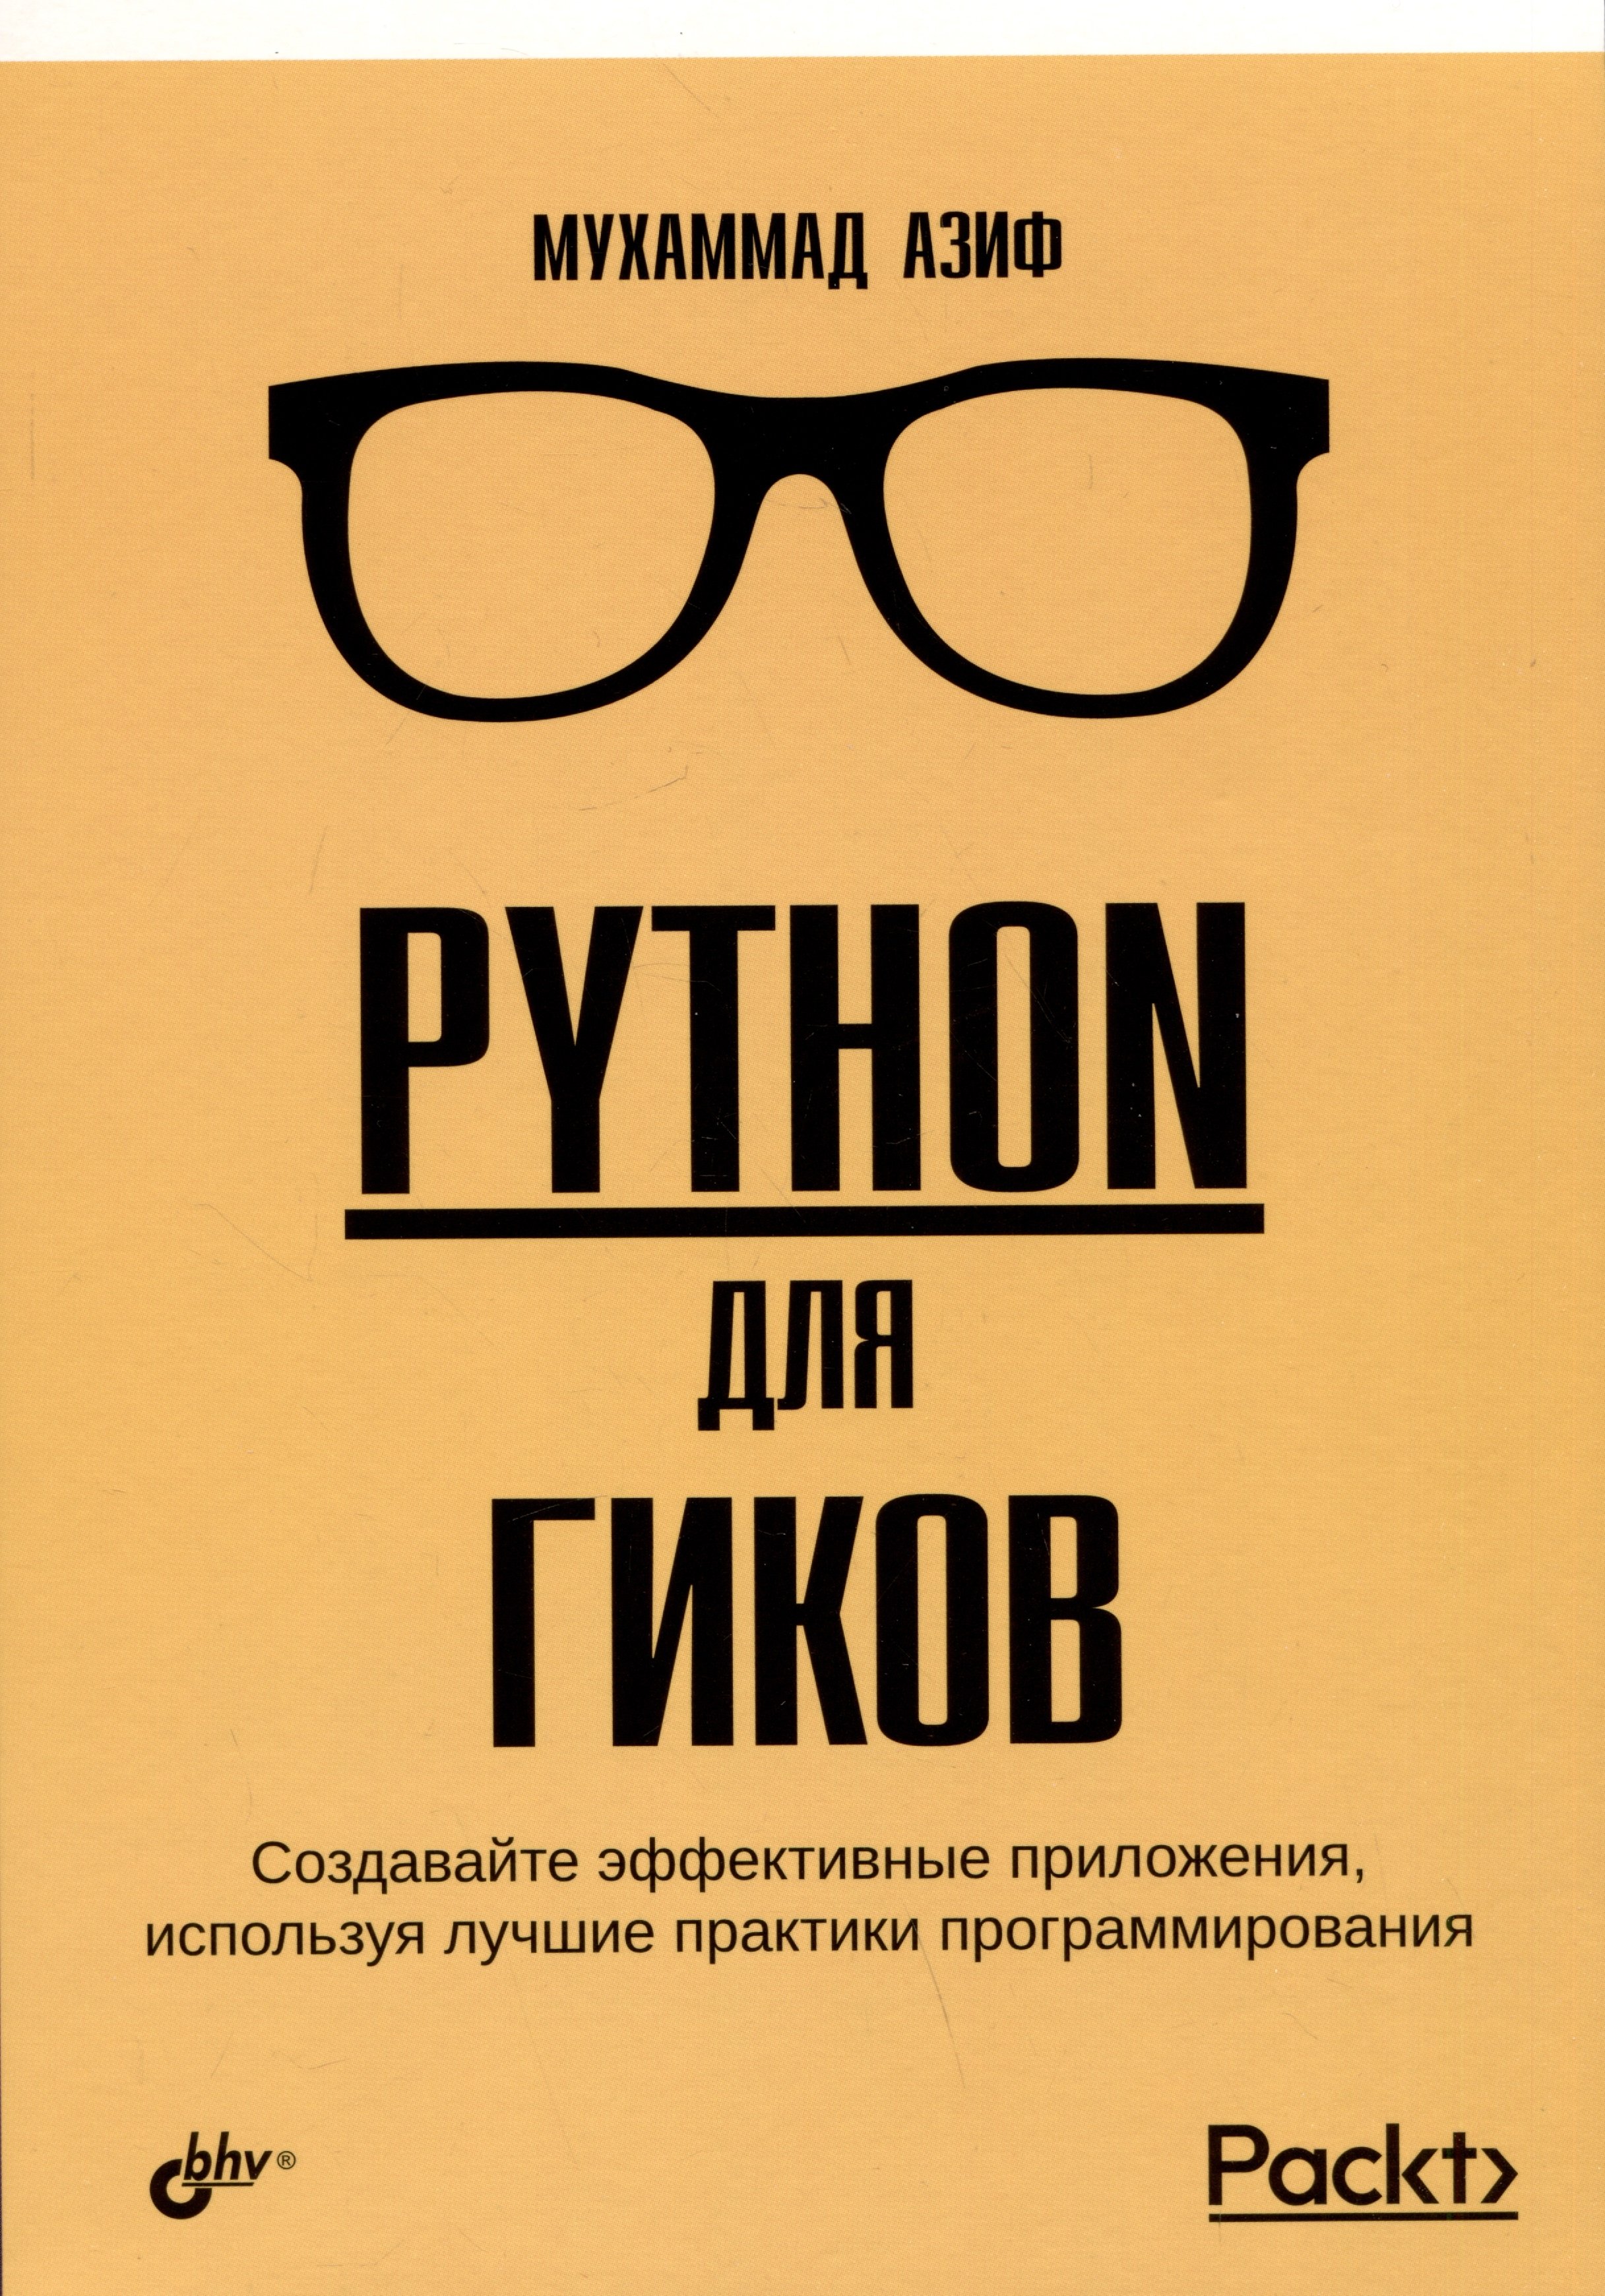 Python купить книгу. Книги для Гиков.